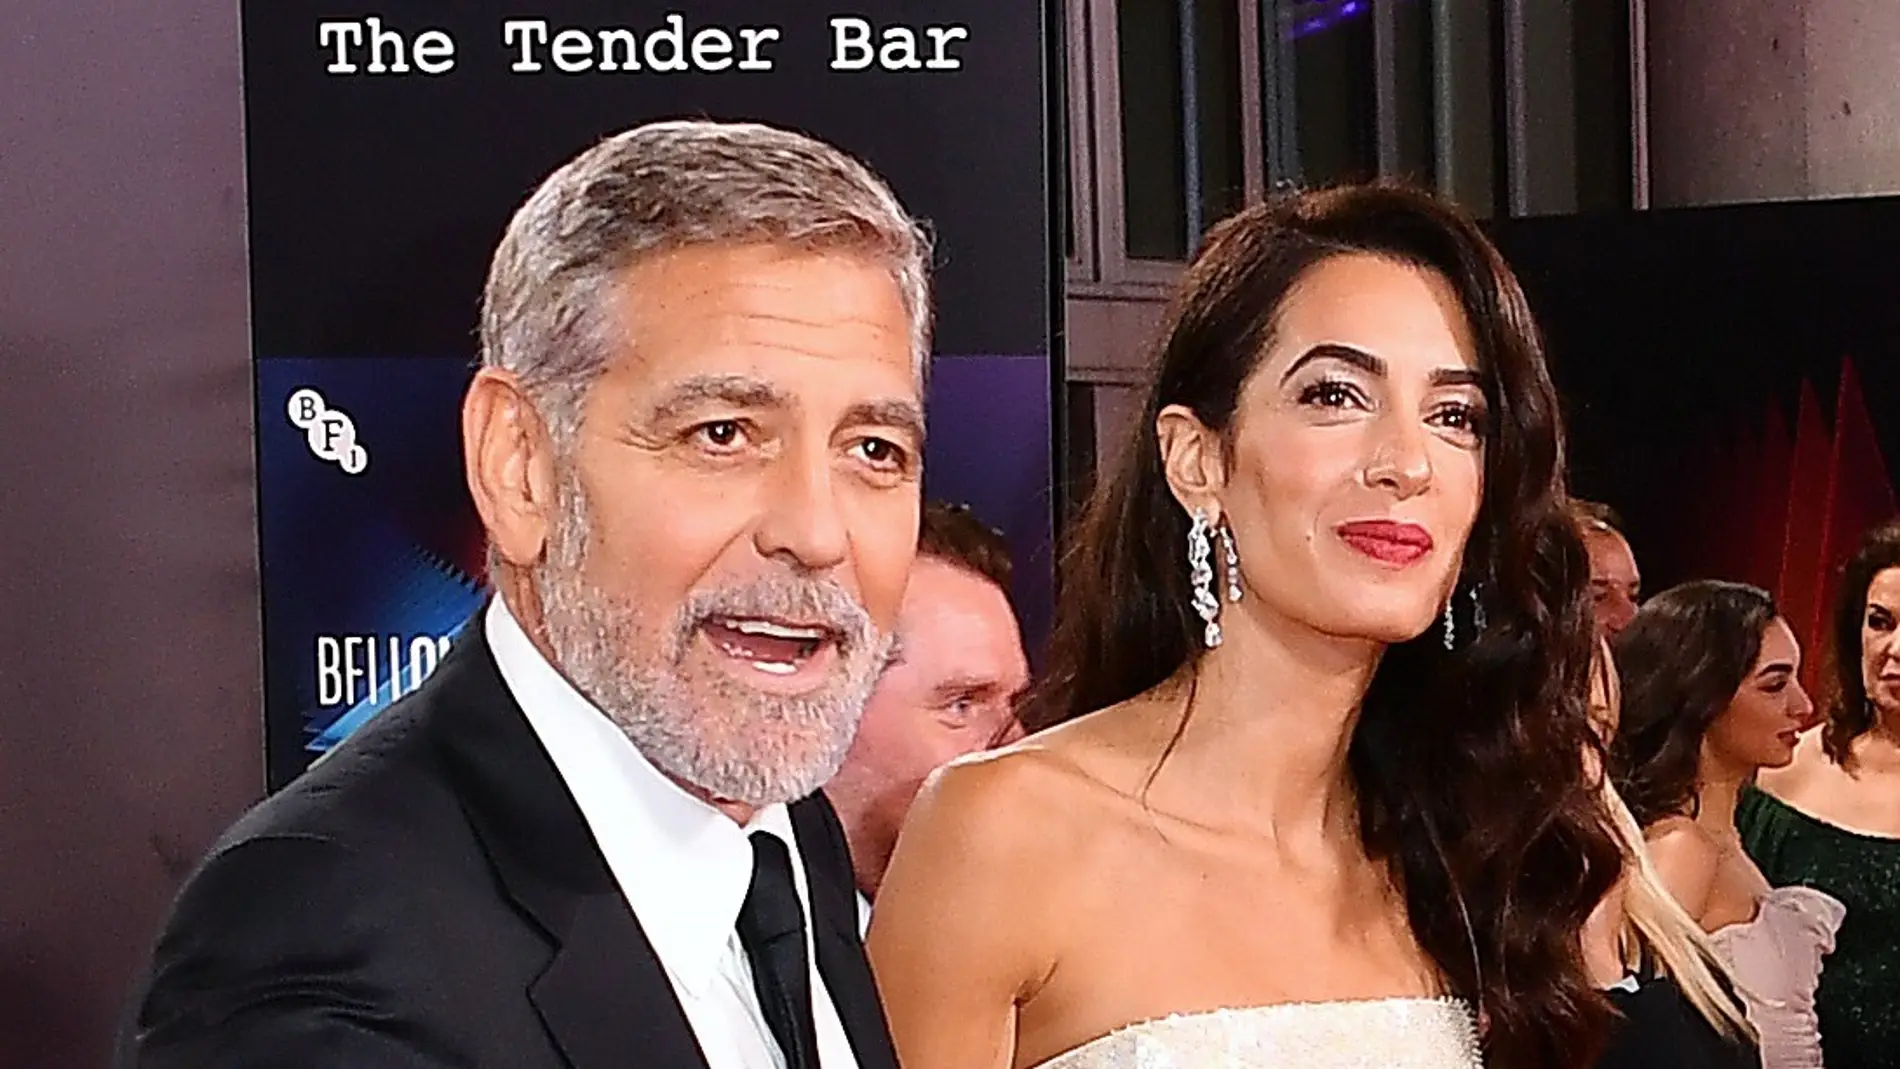 George Clooney y Amal Clooney en el Festival de Cine de Londres